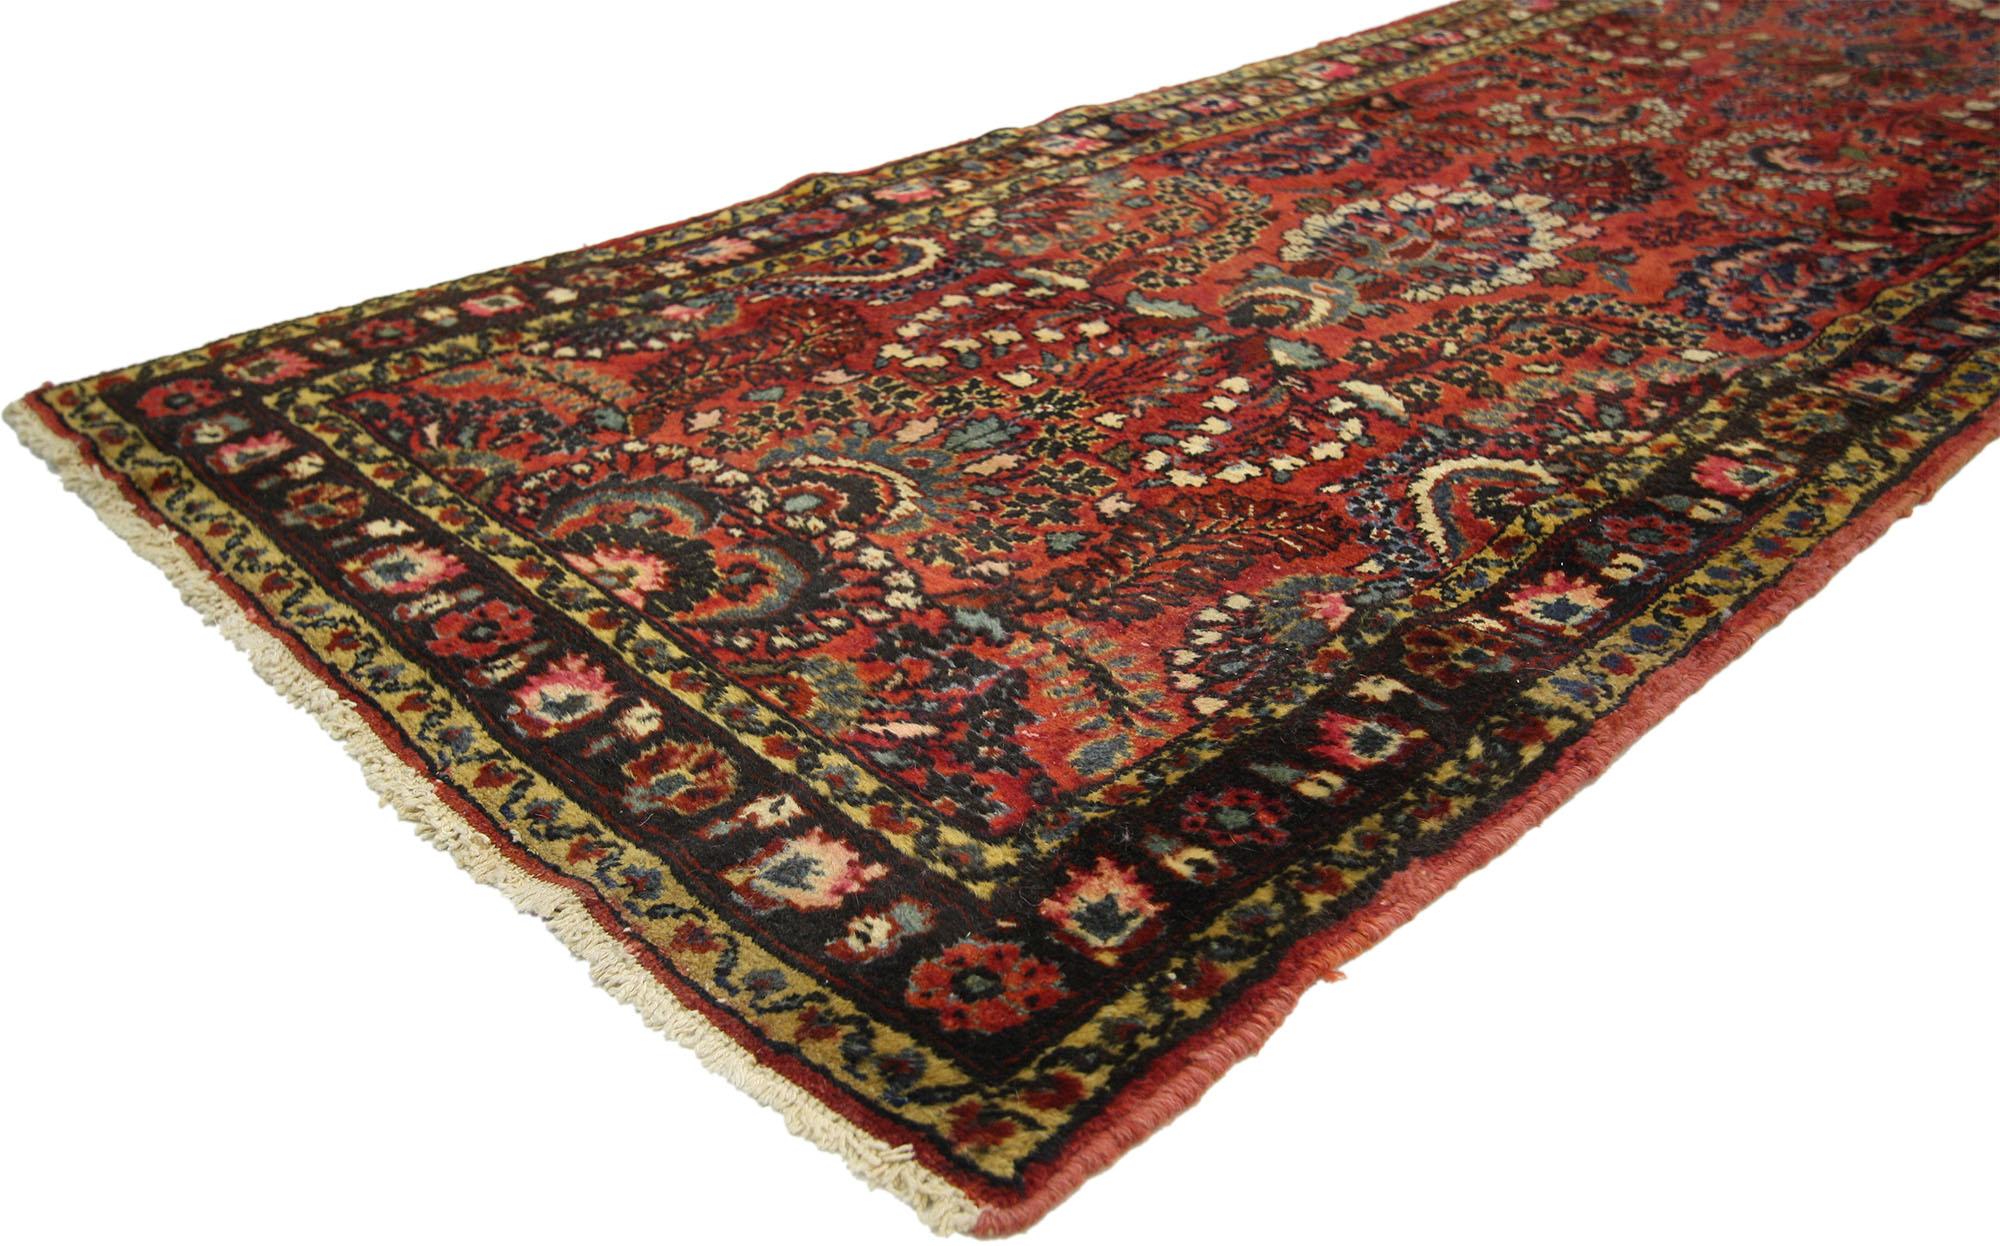 Mit seiner mühelosen Schönheit, seinen unglaublichen Details und seiner Textur ist dieser handgeknüpfte antike persische Hamadan-Teppich aus Wolle eine fesselnde Vision von gewebter Schönheit. Zarte Blüten und sanfte Ranken schlängeln sich anmutig